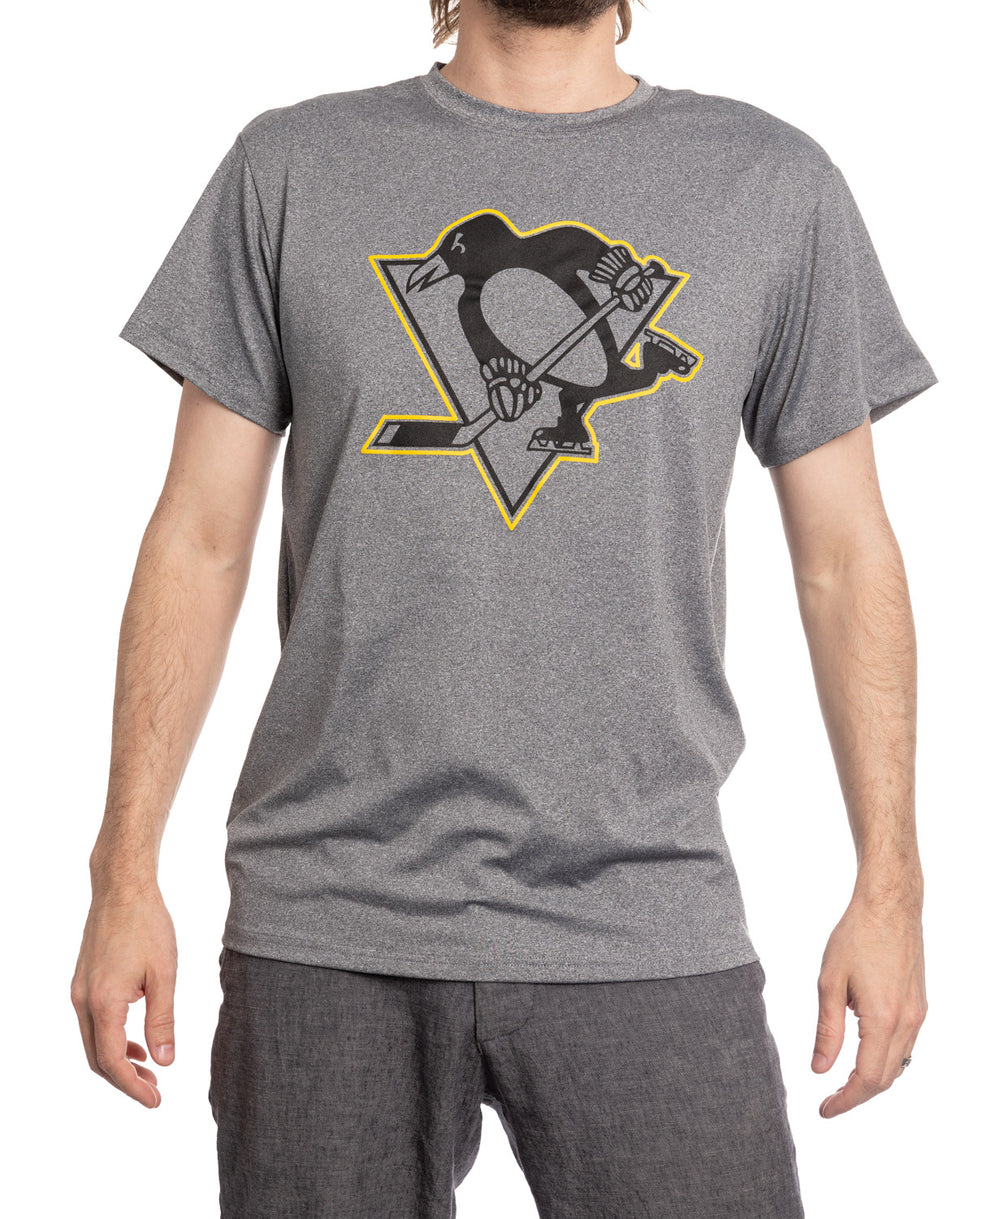  NHL Pittsburgh Penguins Center Logo Women's T-Shirt